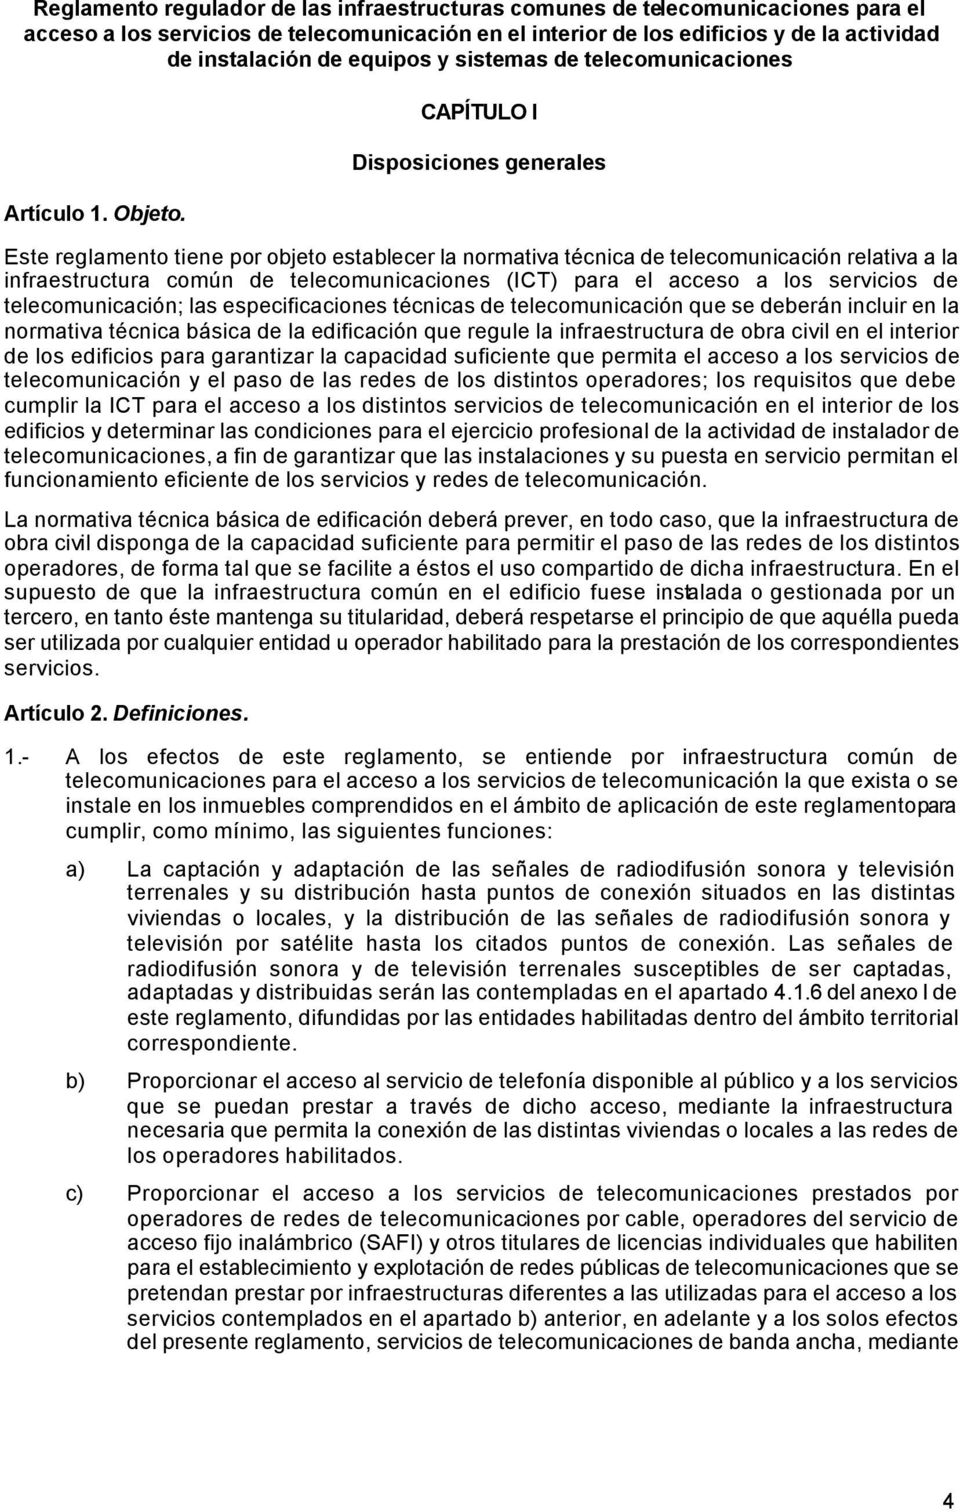 CAPÍTULO I Disposiciones generales Este reglamento tiene por objeto establecer la normativa técnica de telecomunicación relativa a la infraestructura común de telecomunicaciones (ICT) para el acceso